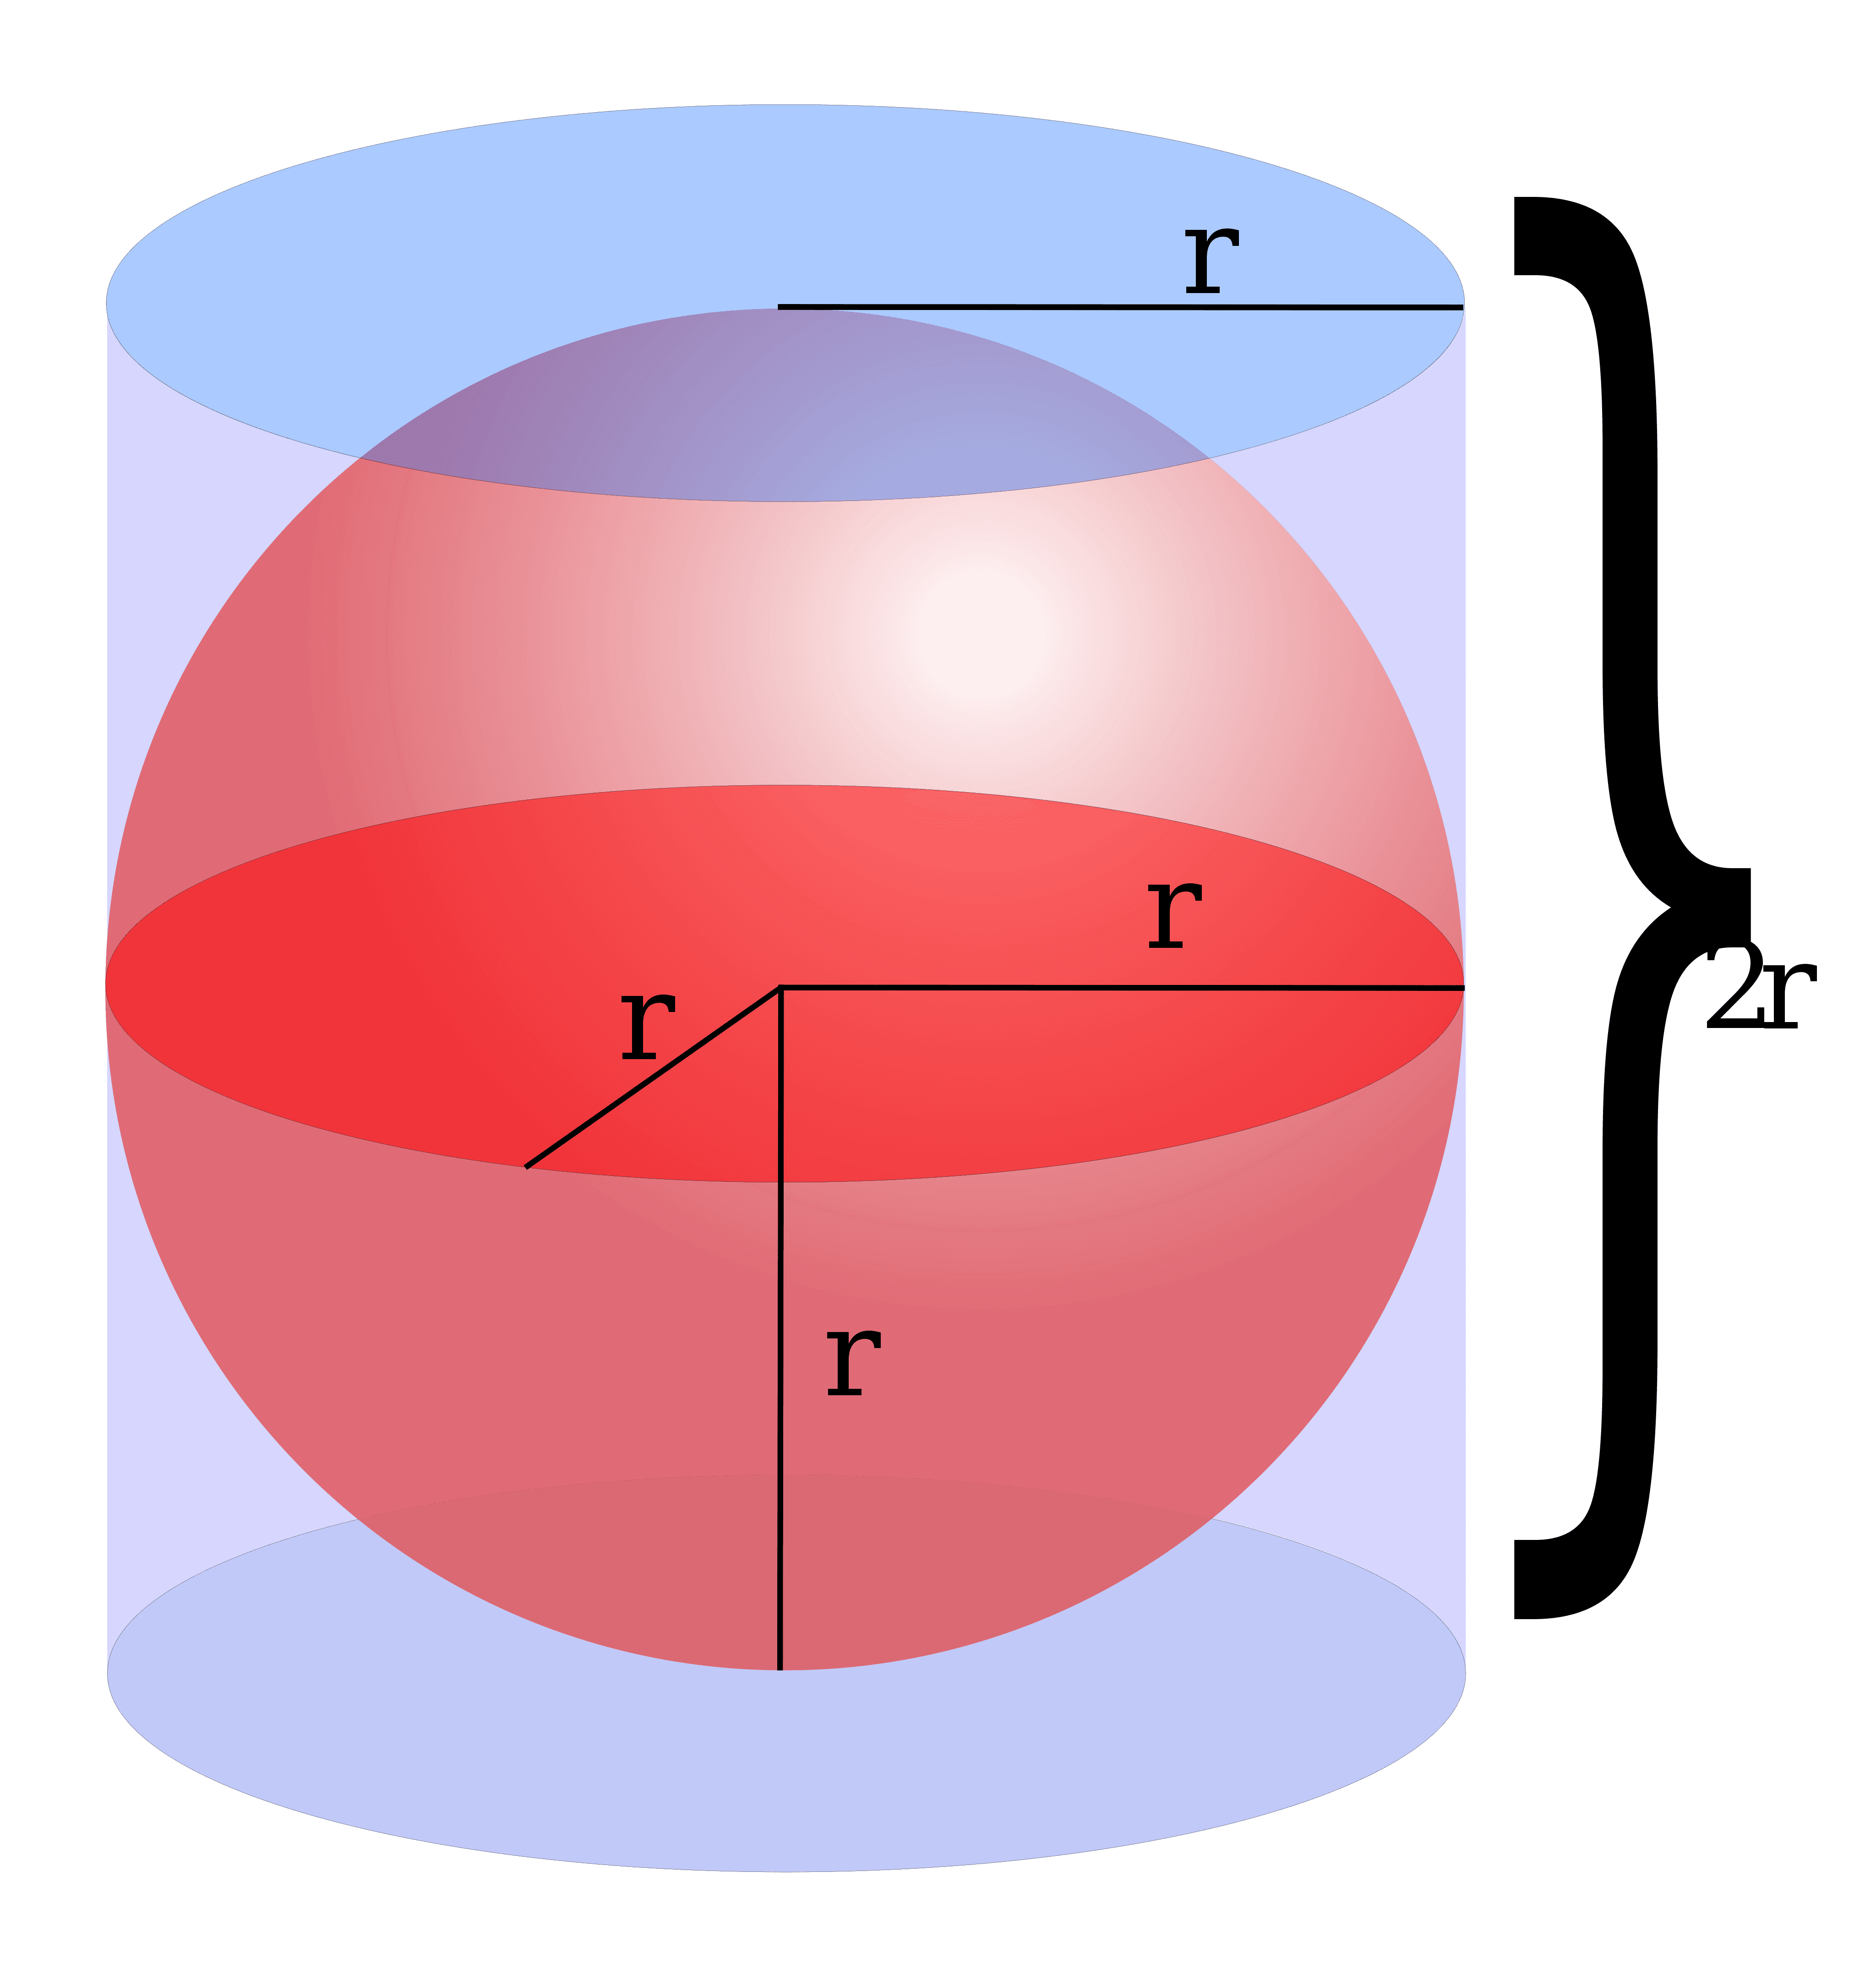 sphere-volume-area-and-diameter-calculator-unitpedia-2021